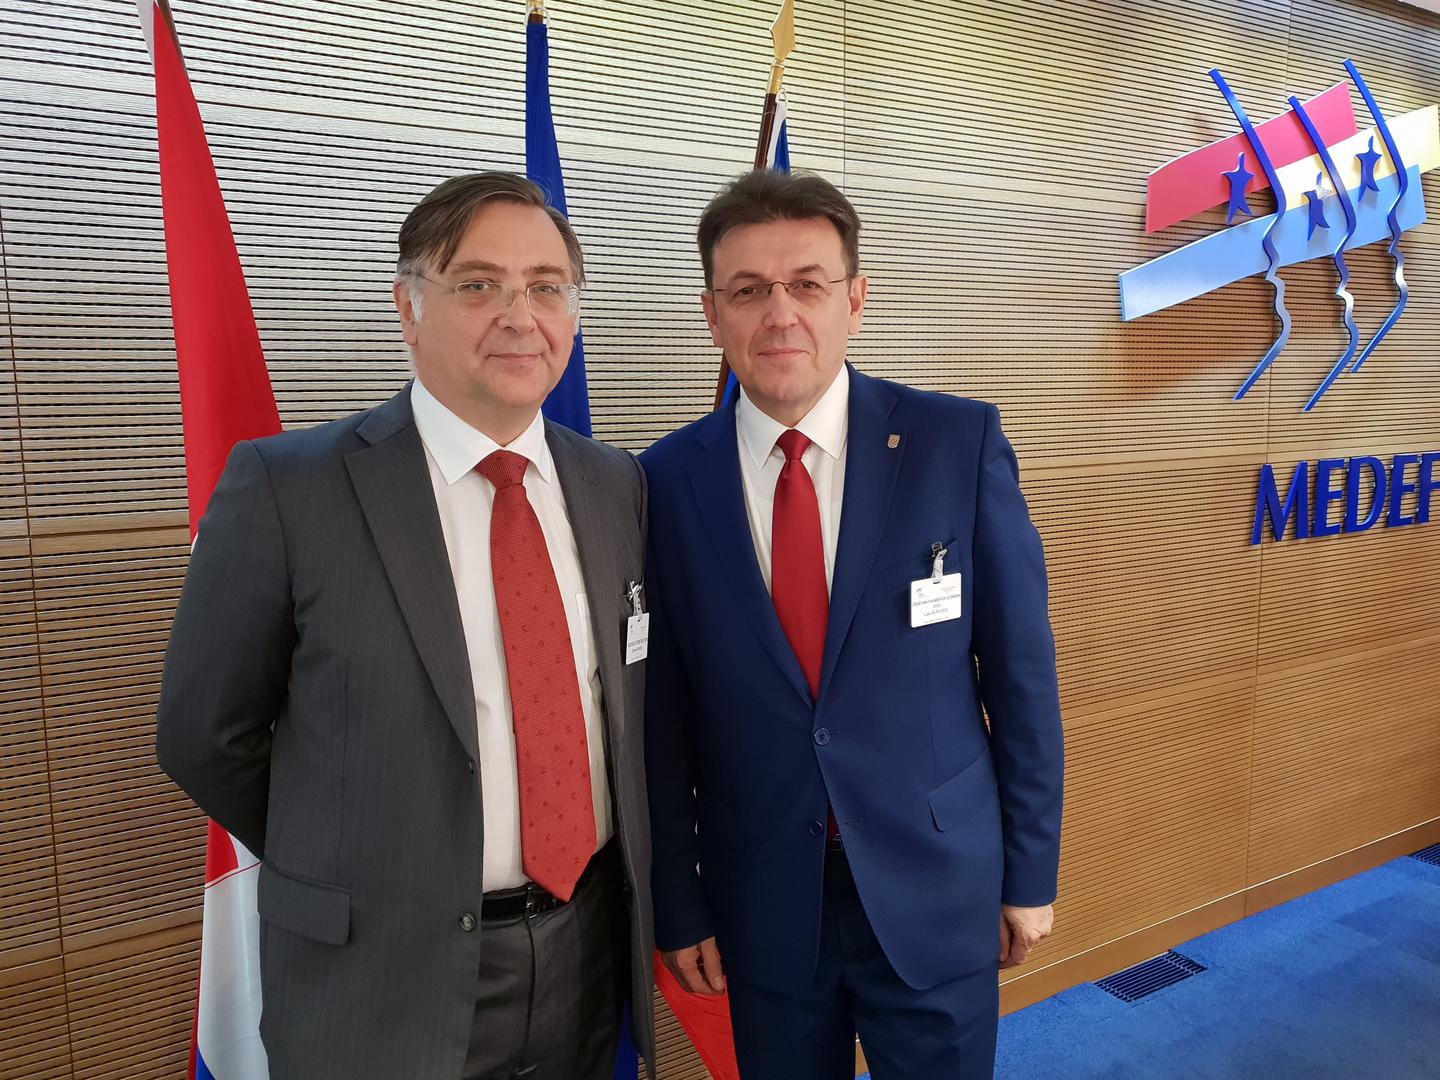 Charles Paradis, predsjednik MEDEF Međunarodnog francusko-hrvatskog poslovnog vijeća i predsjednik Hrvatske gospodarske komore Luka Burilović